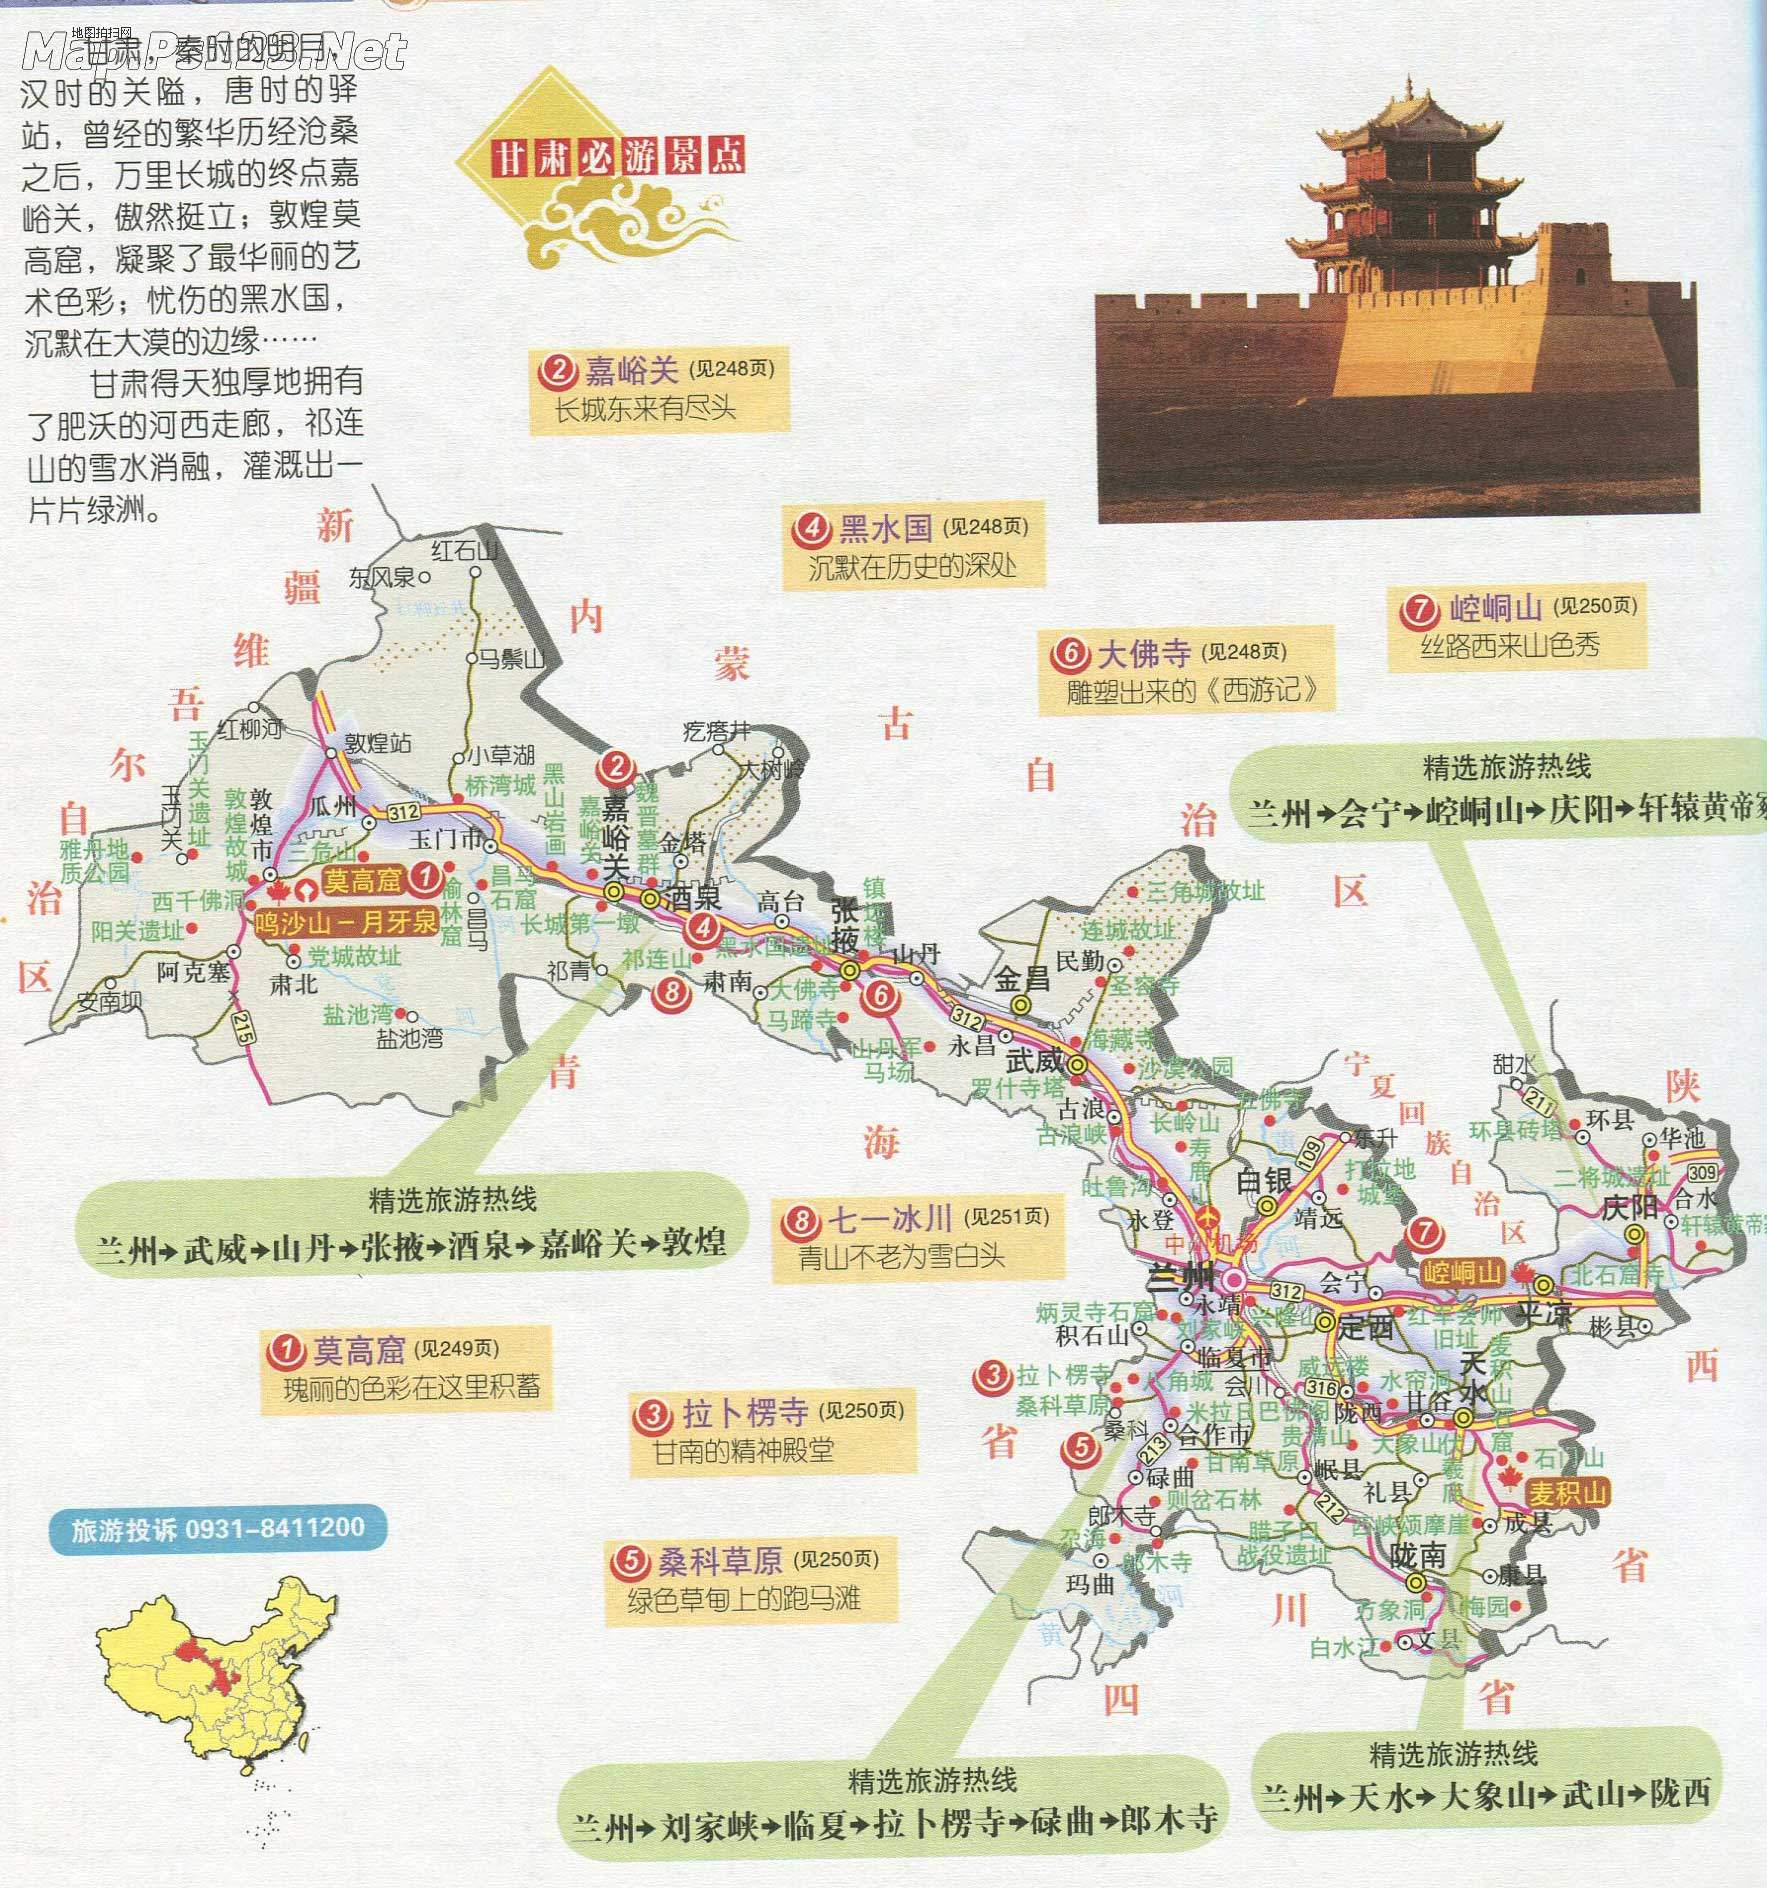 陕西必游旅游景点  | 必游景点 |  下一张地图: 宁夏必游旅游景点图片